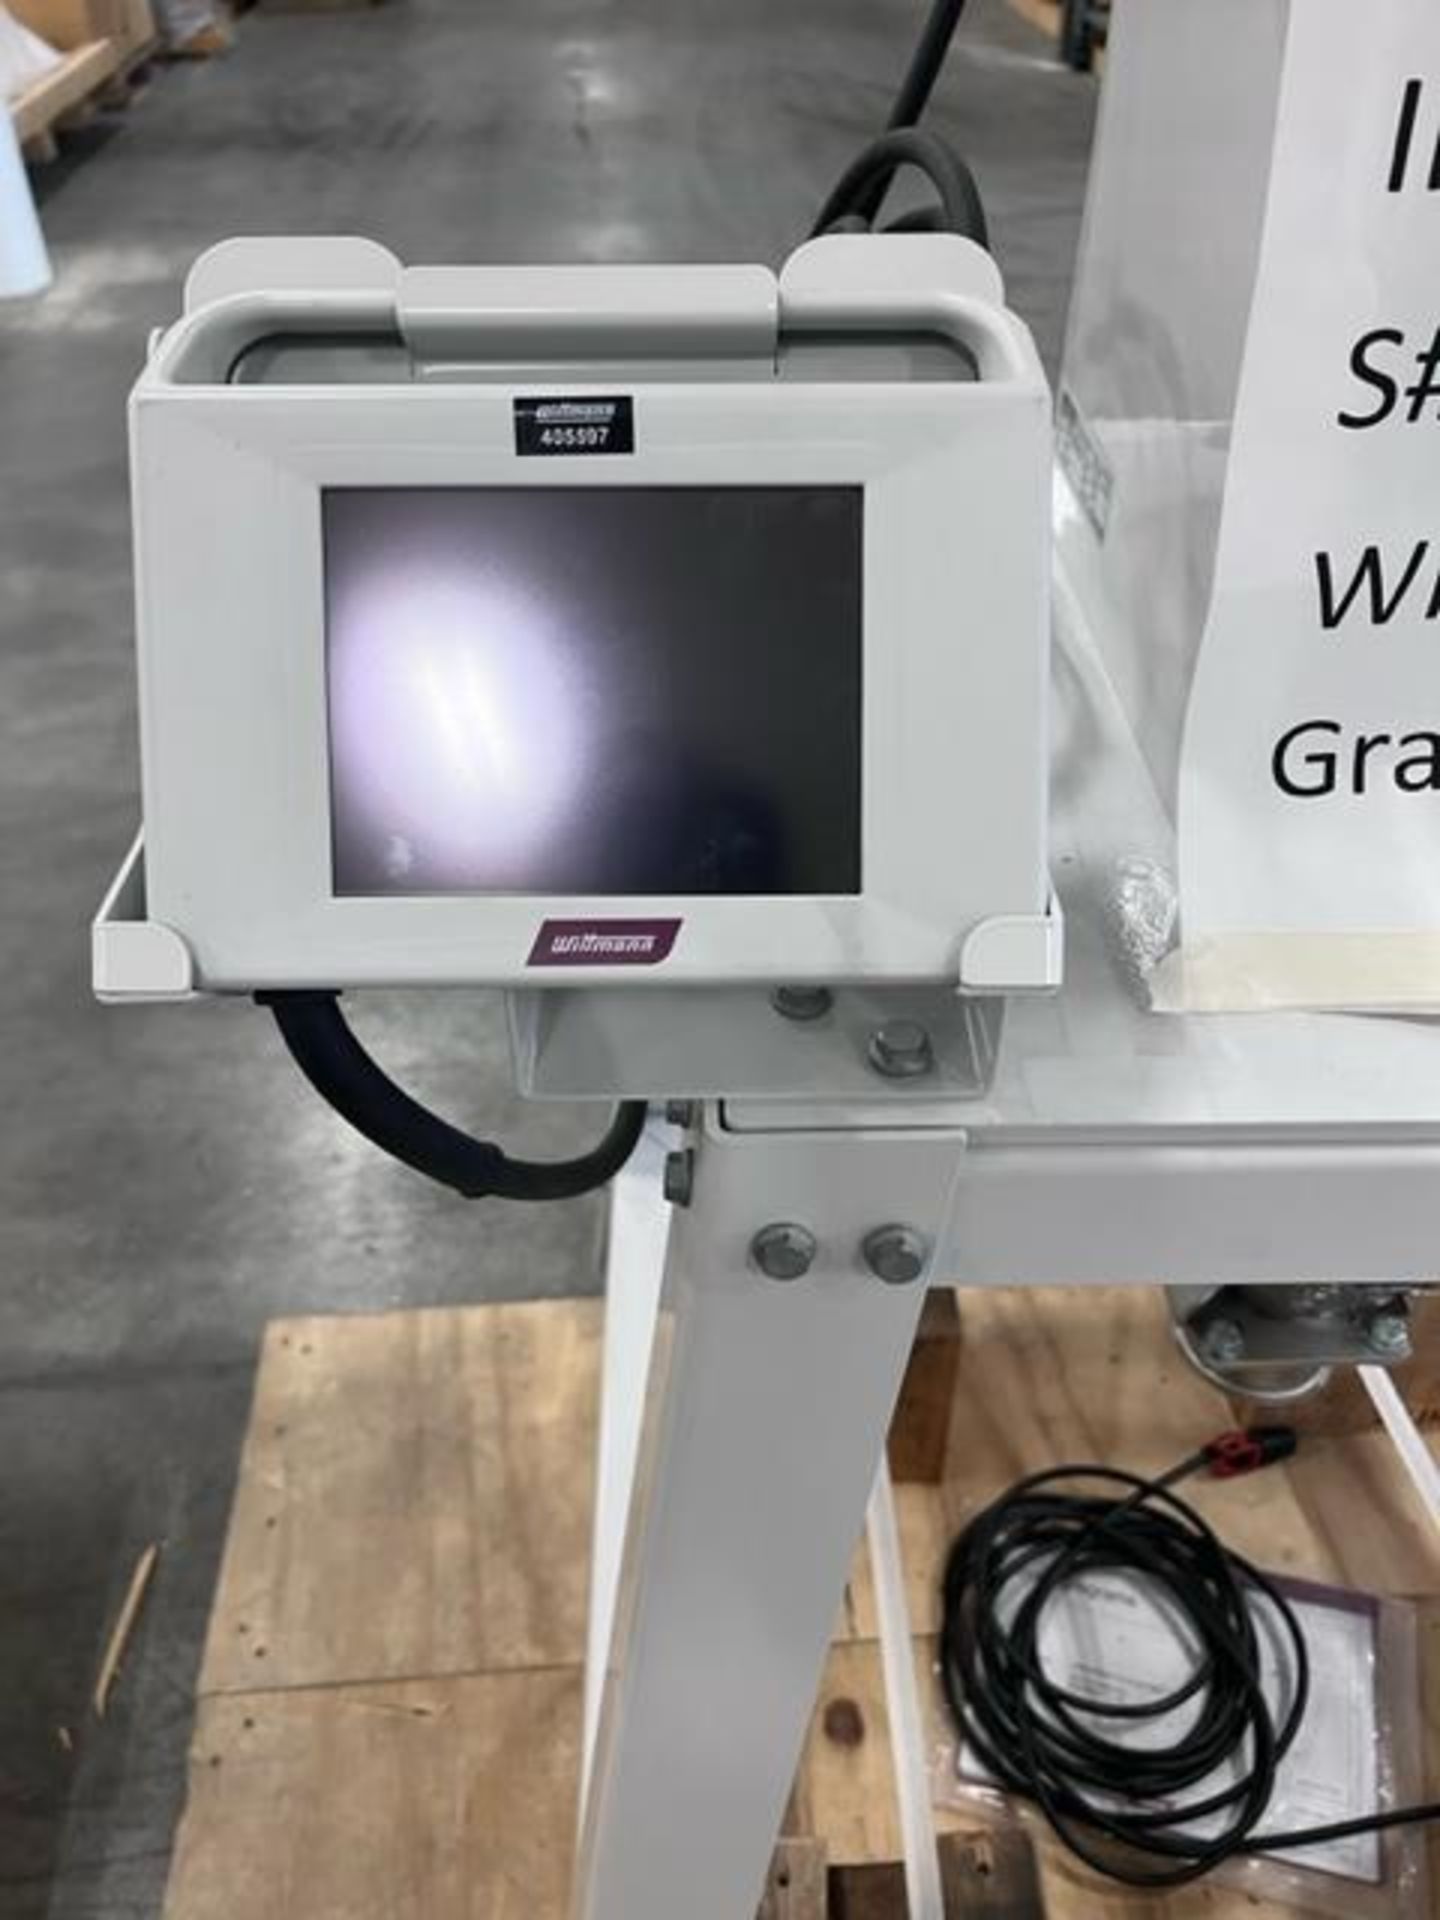 Wittmann Gravimax G-34 Material Blender, New in 2018 - Image 2 of 3